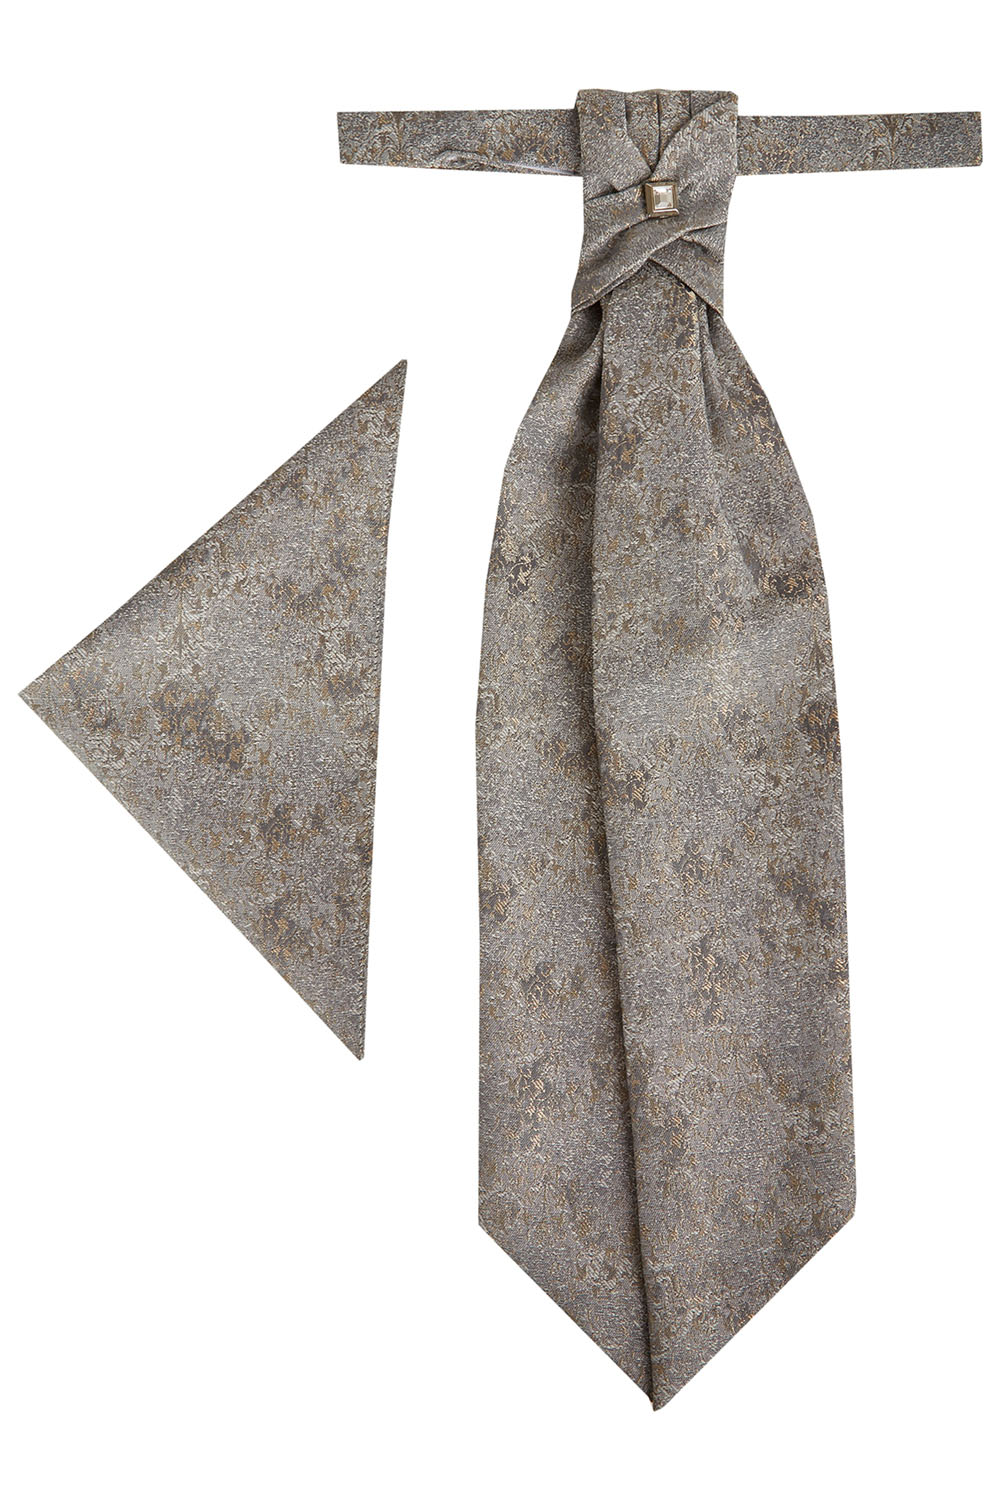 TZIACCO francia nyakkendő és díszzsebkendő 501113-27 0535